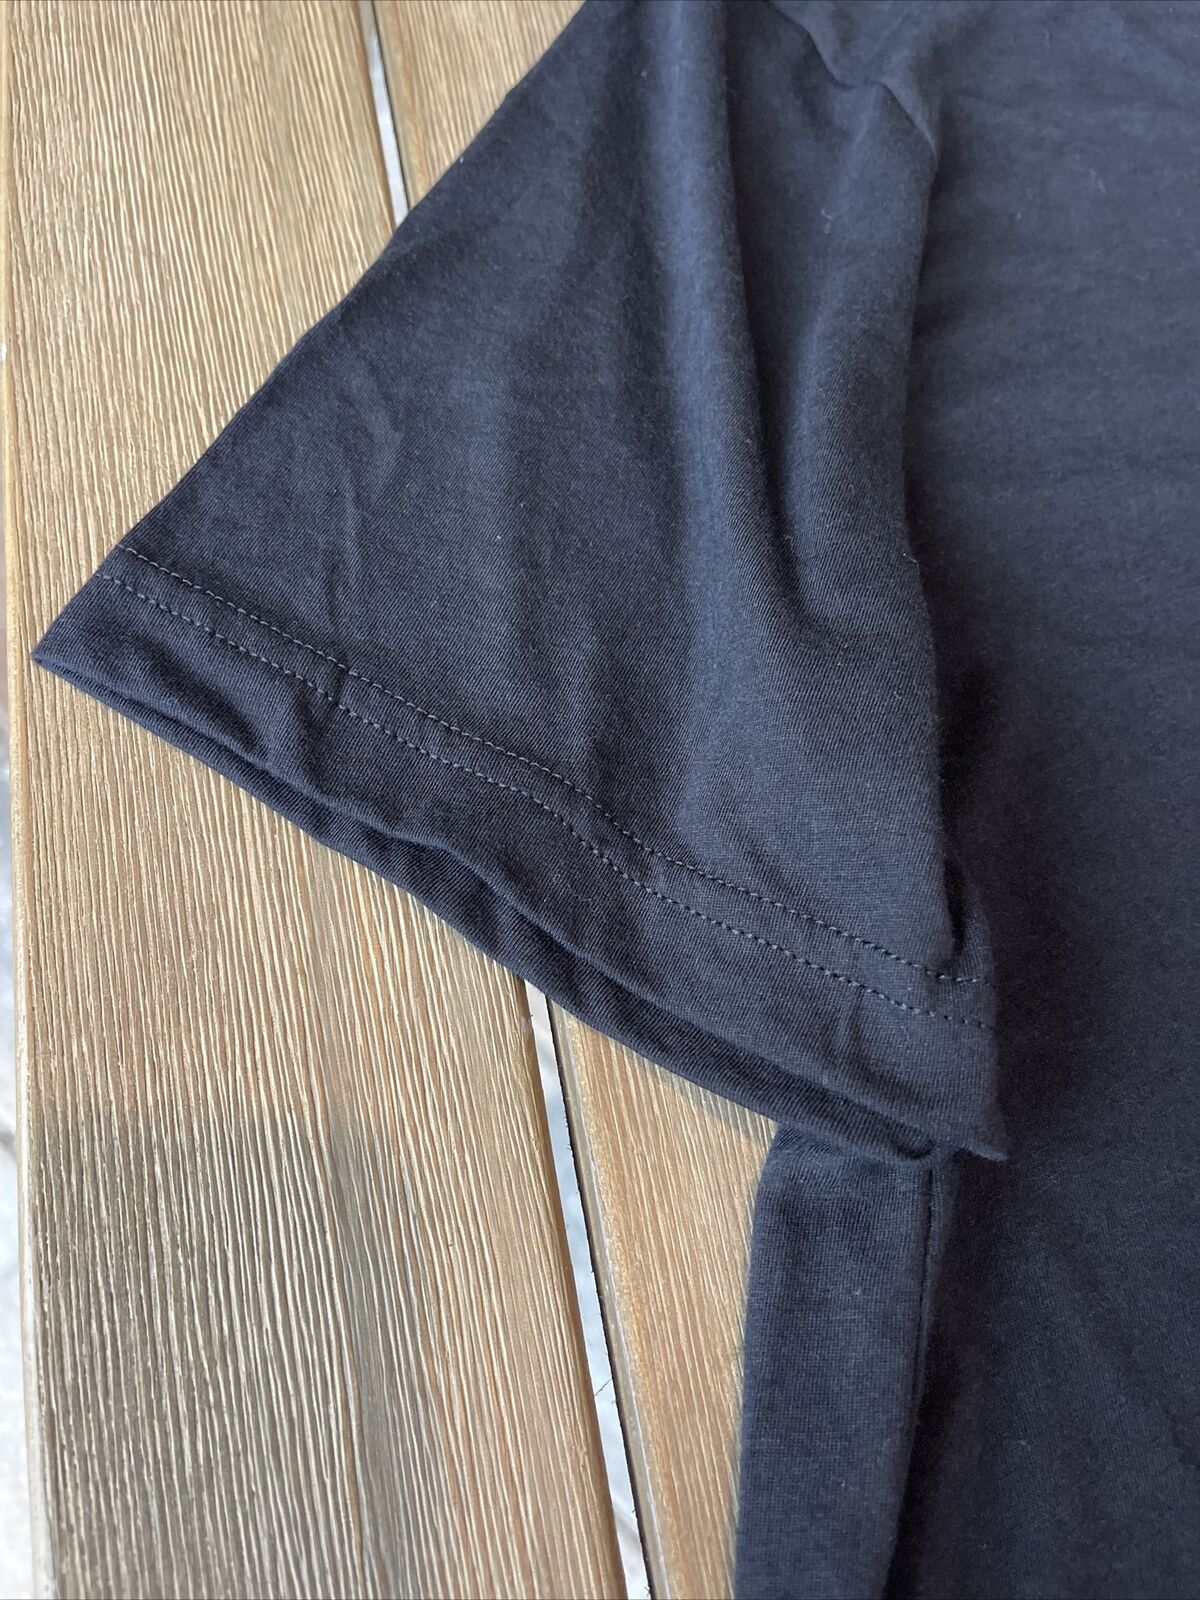 Groove Salad XL Men’s T Shirt Soft Cotton Black - image 7